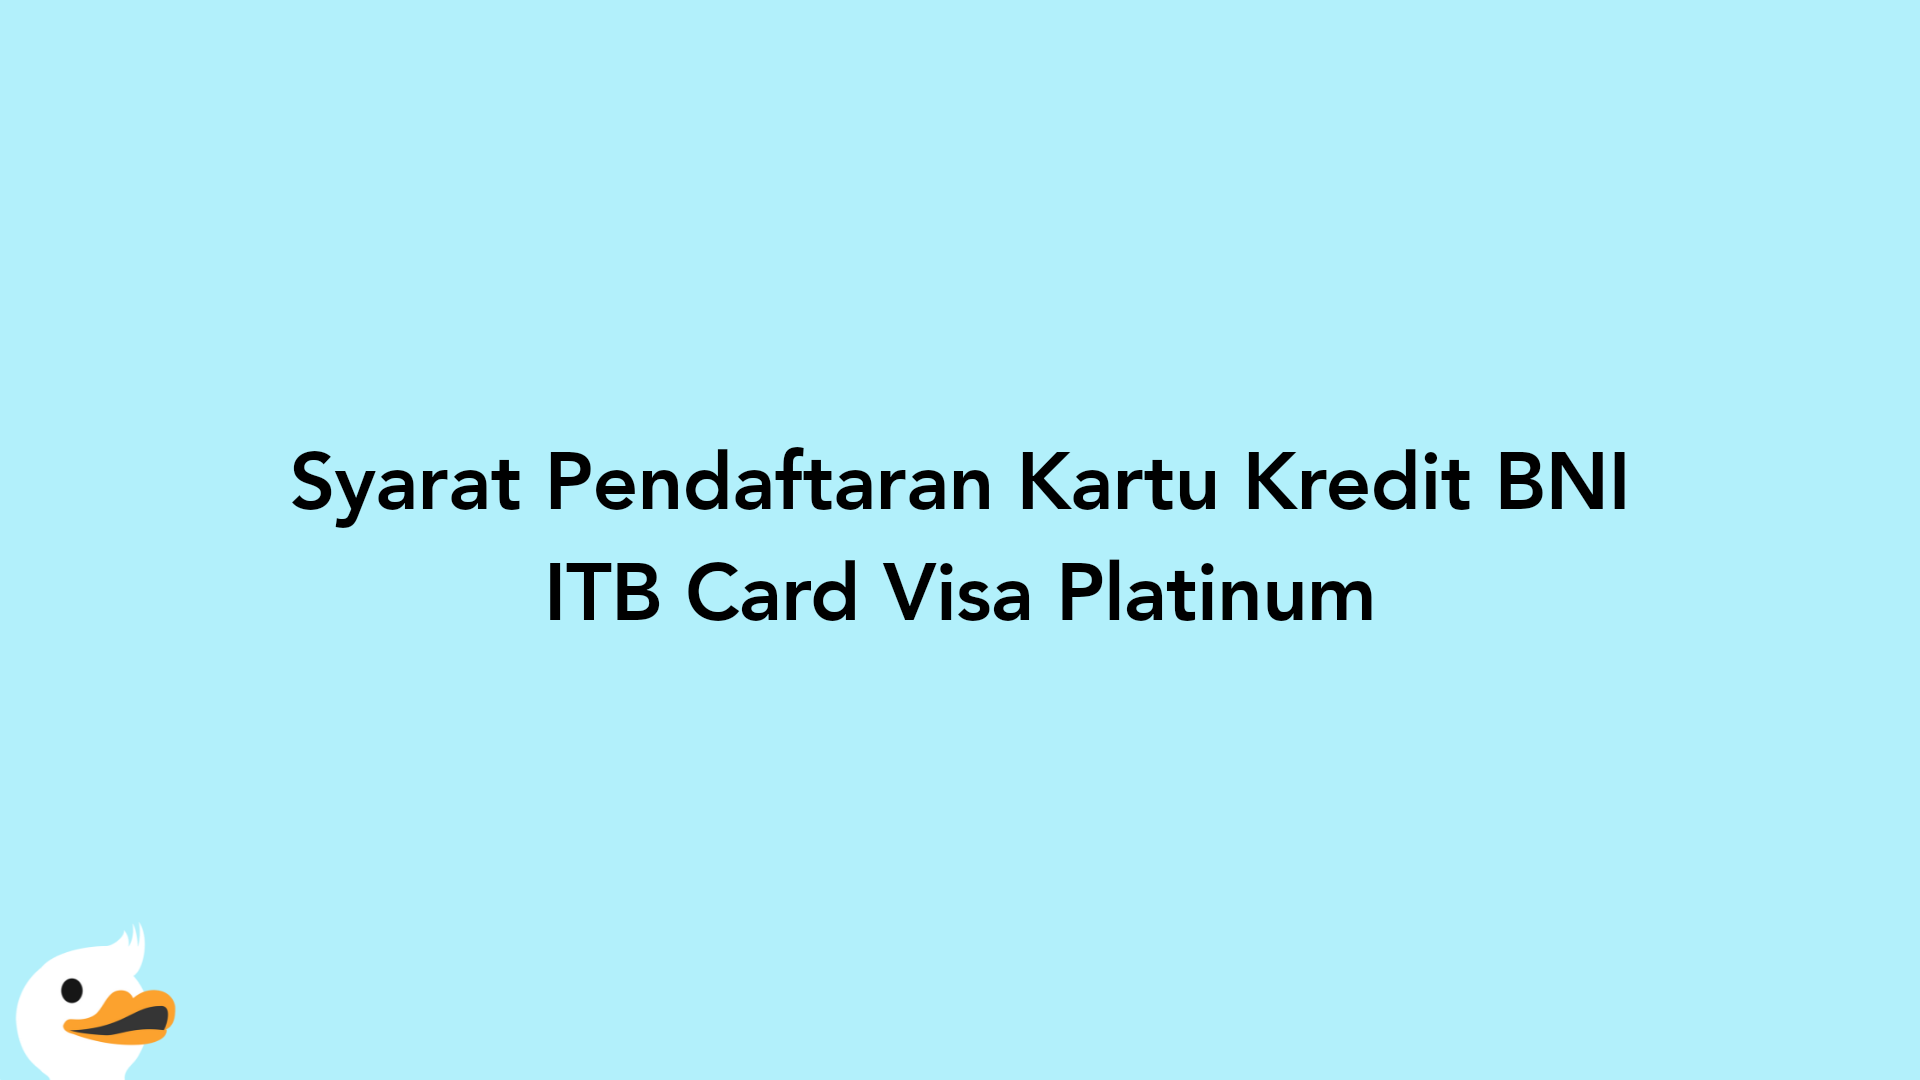 Syarat Pendaftaran Kartu Kredit BNI ITB Card Visa Platinum